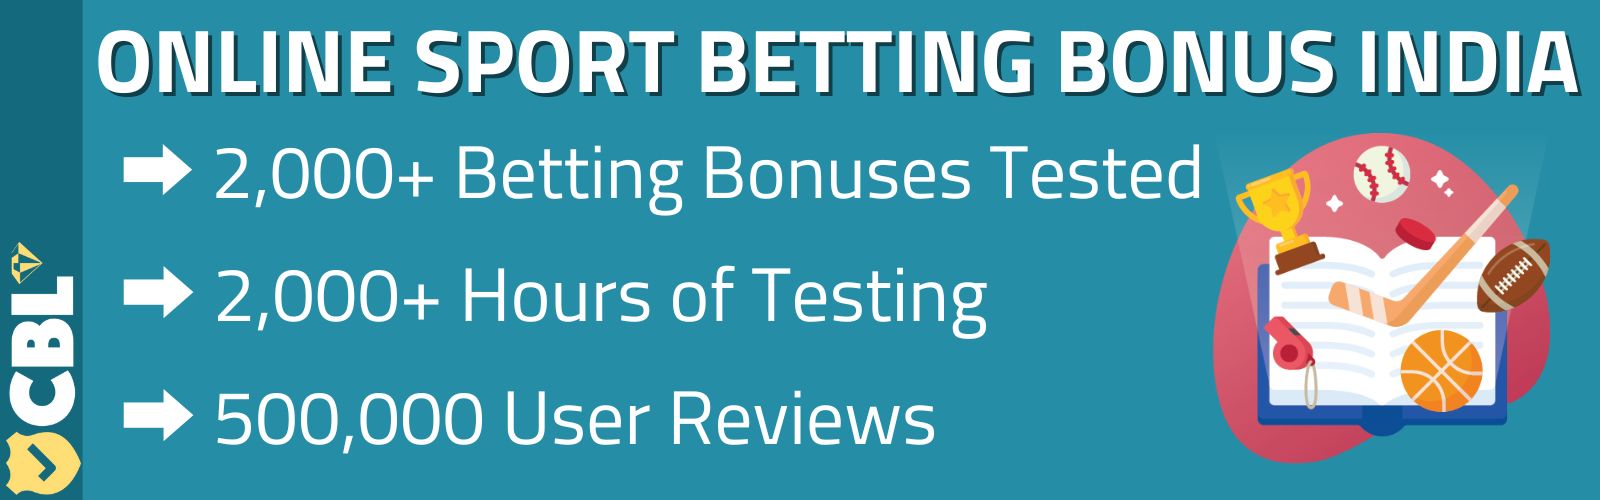 Online Sport Betting Bonus